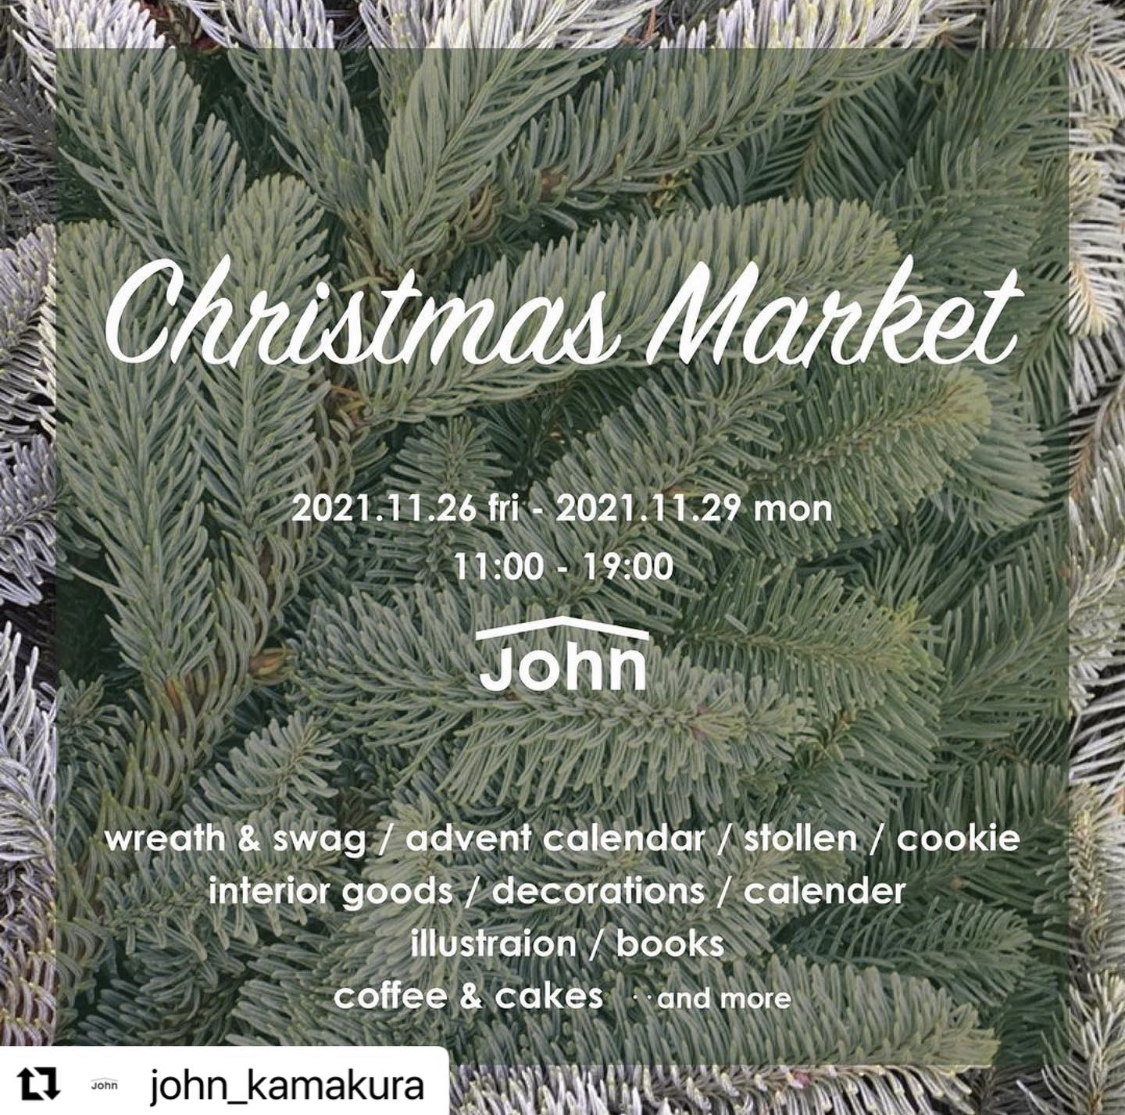 【出店のお知らせ】John Christmas Market 2021